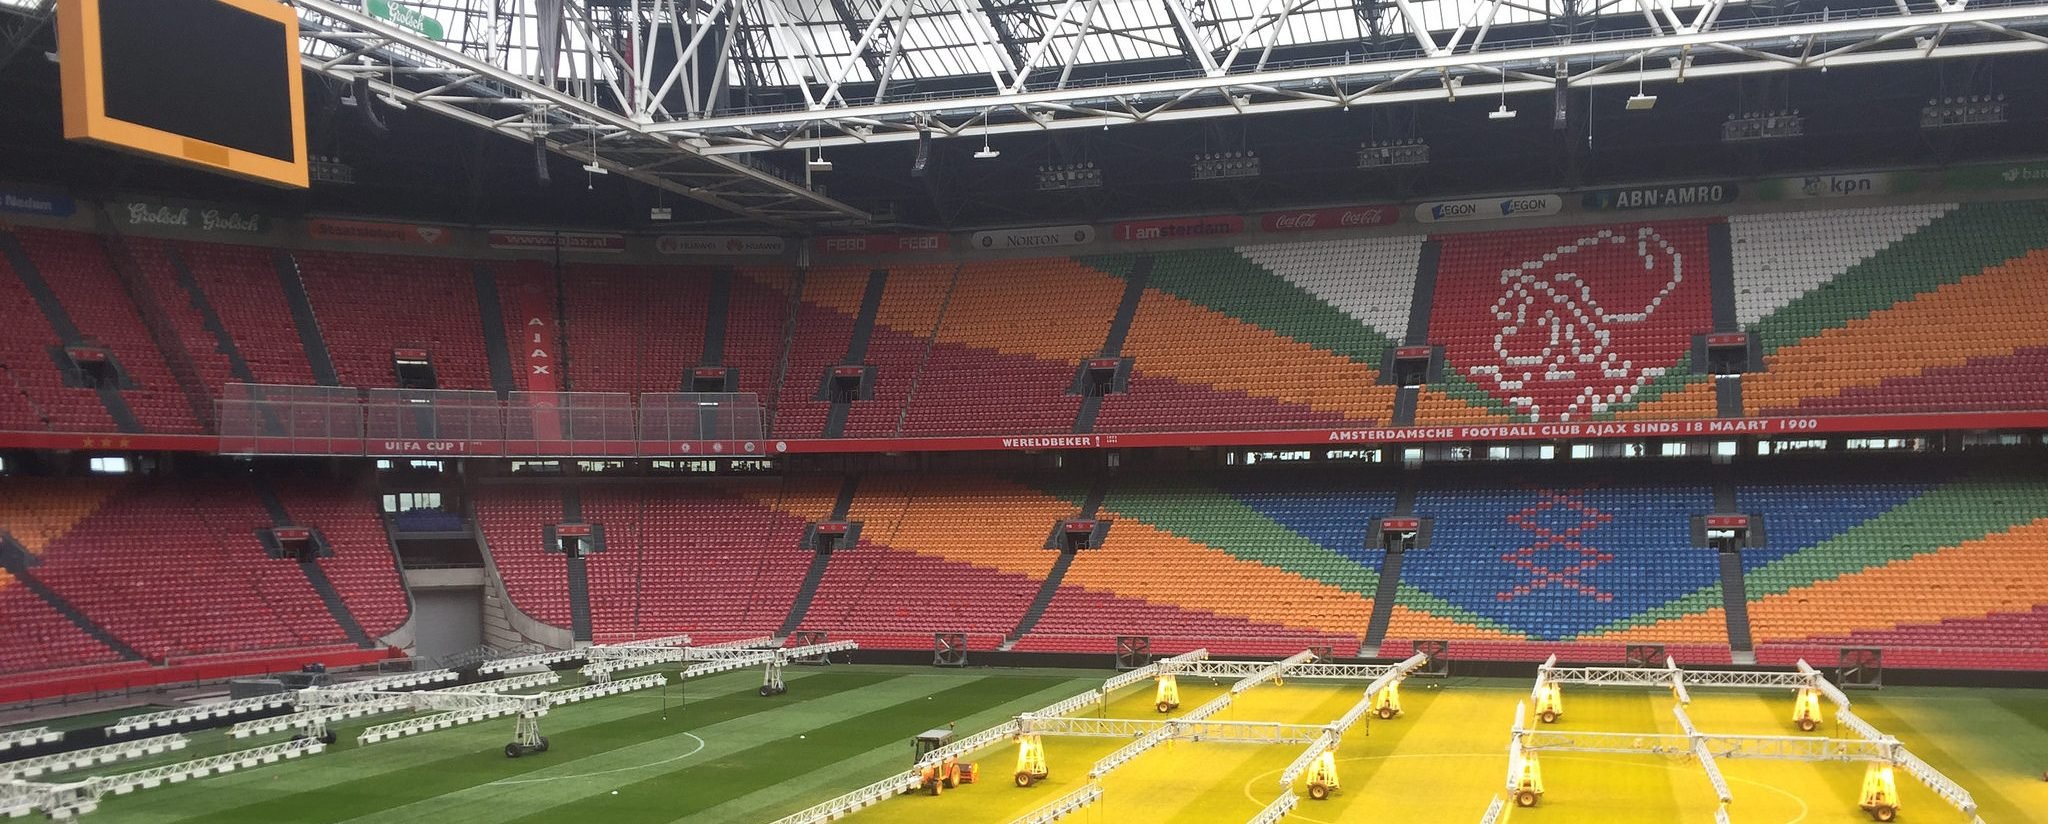 Amsterdam Arena Ränge|Völler Rijkaard Spucke|Flaggen Deutschland Holland|Joachim Löw mit Schal|Amsterdam Arena